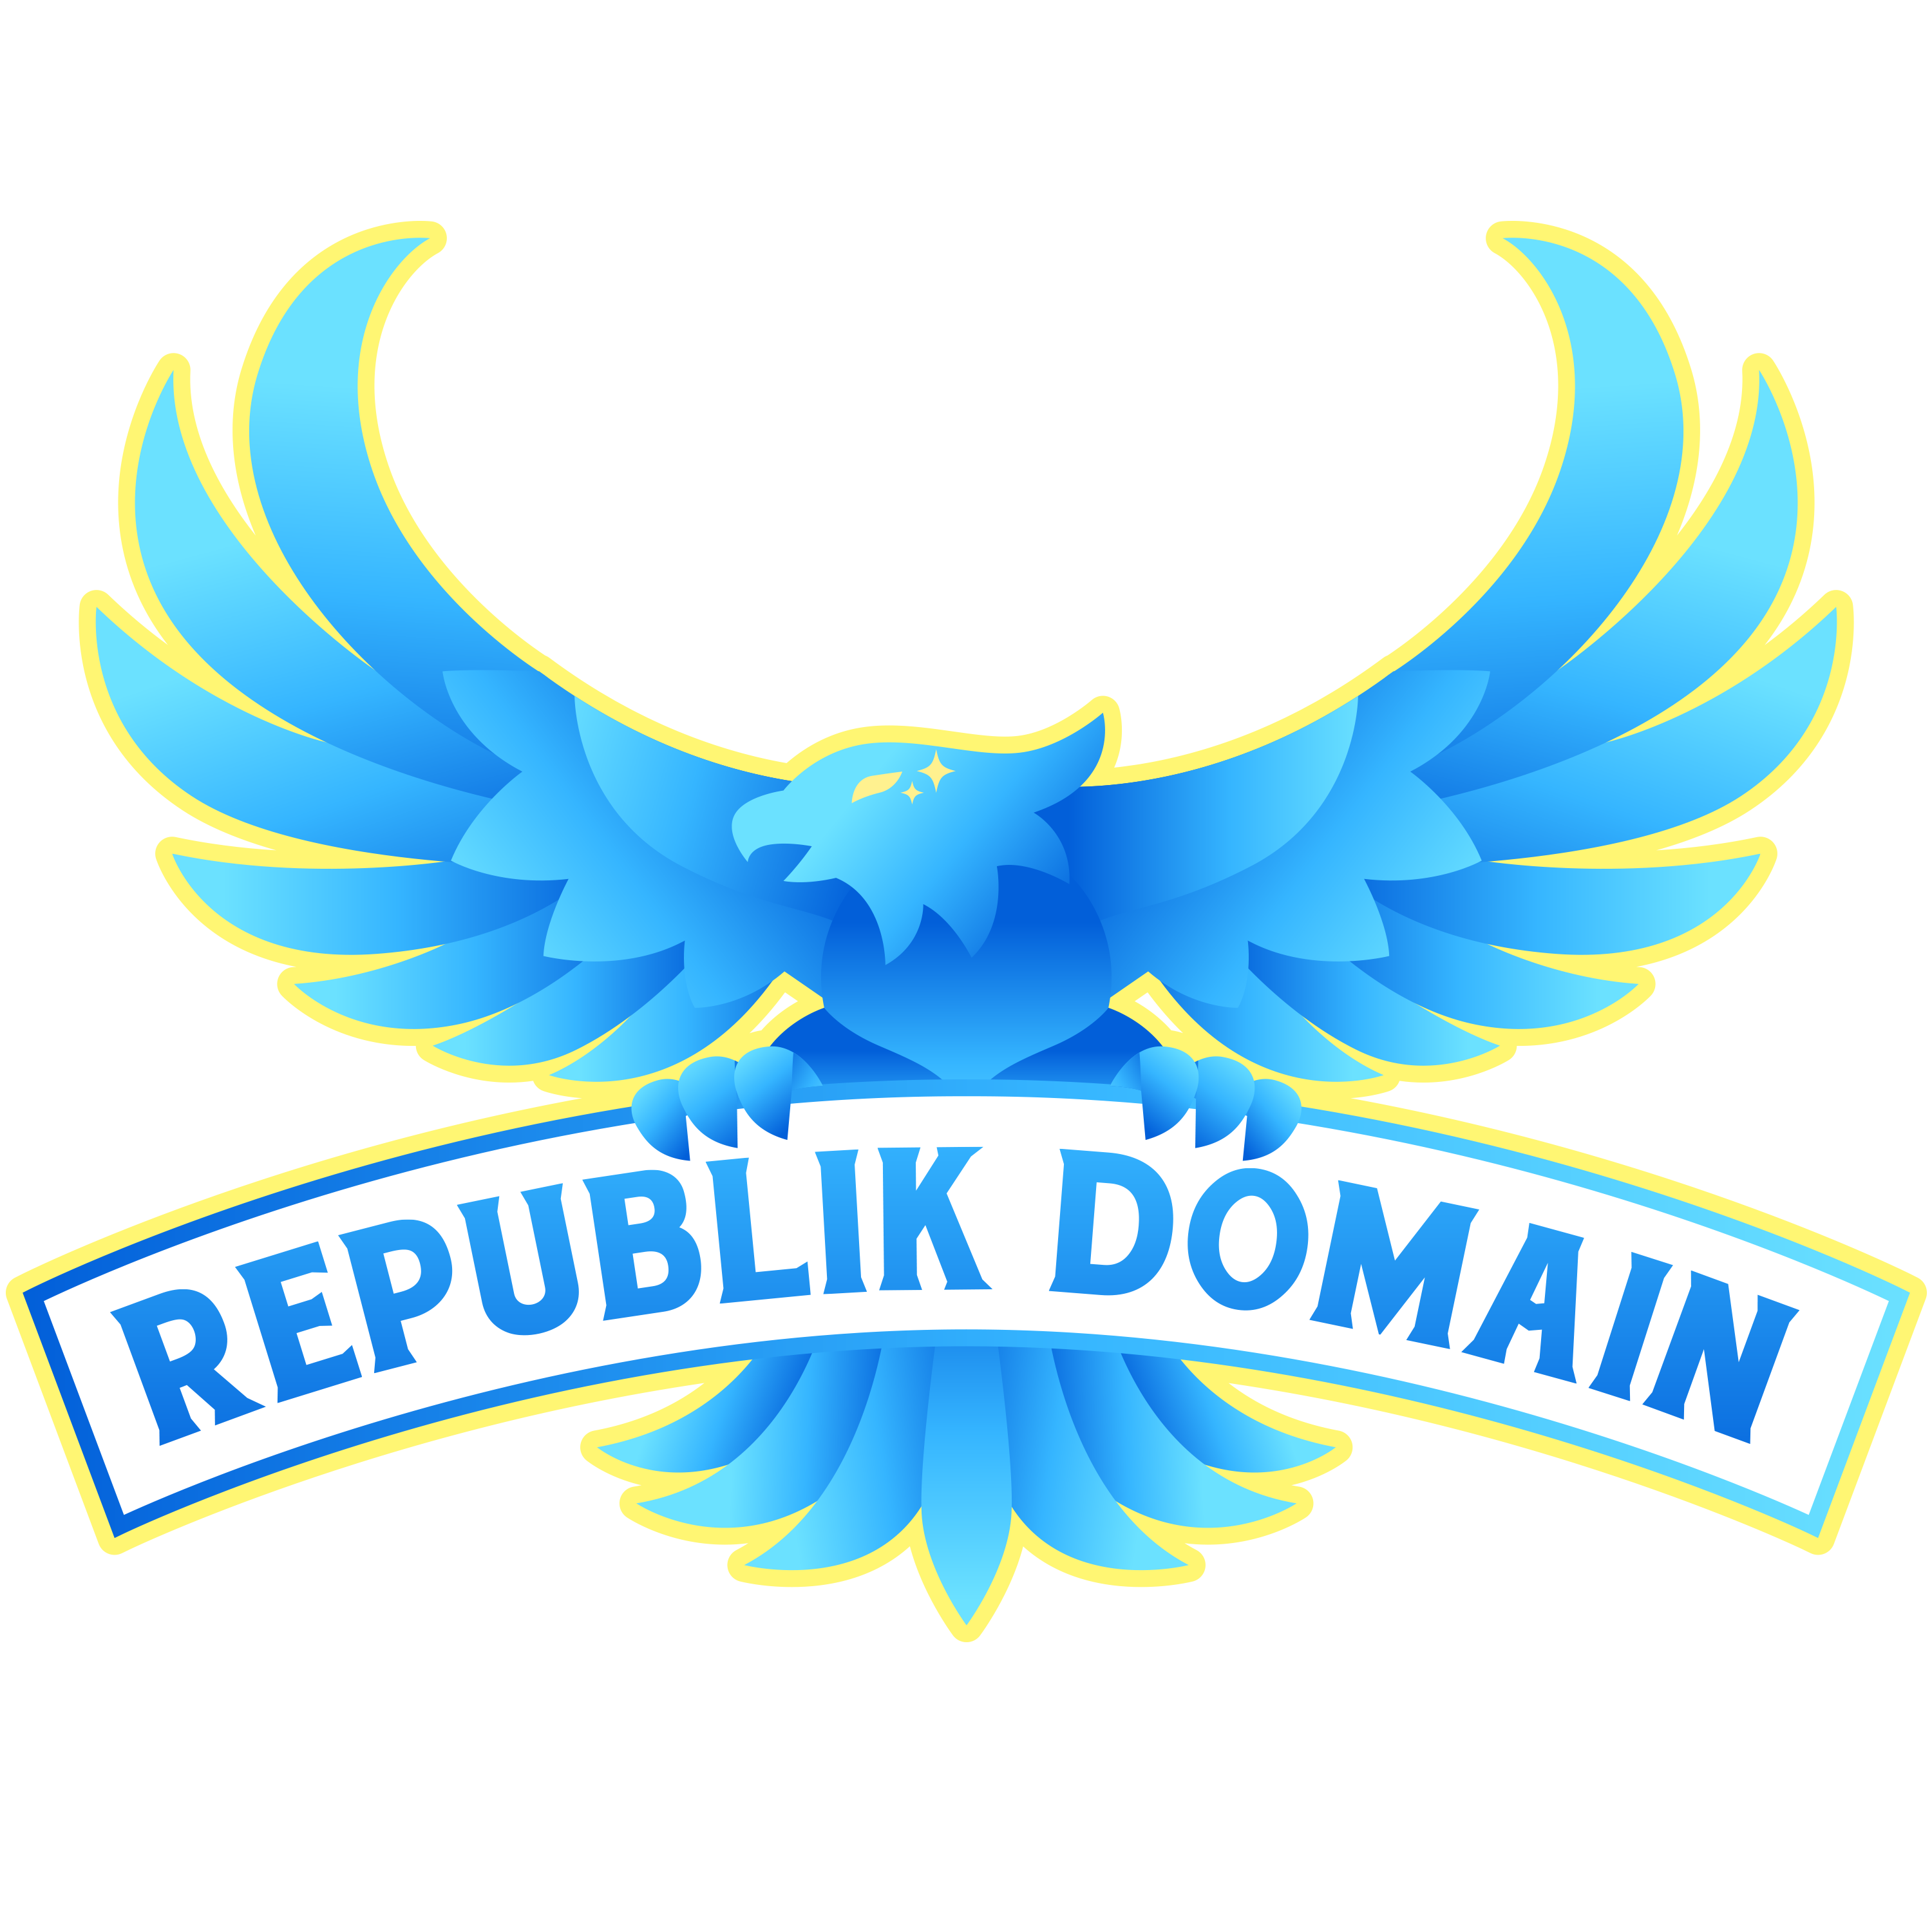 Brandable Domains